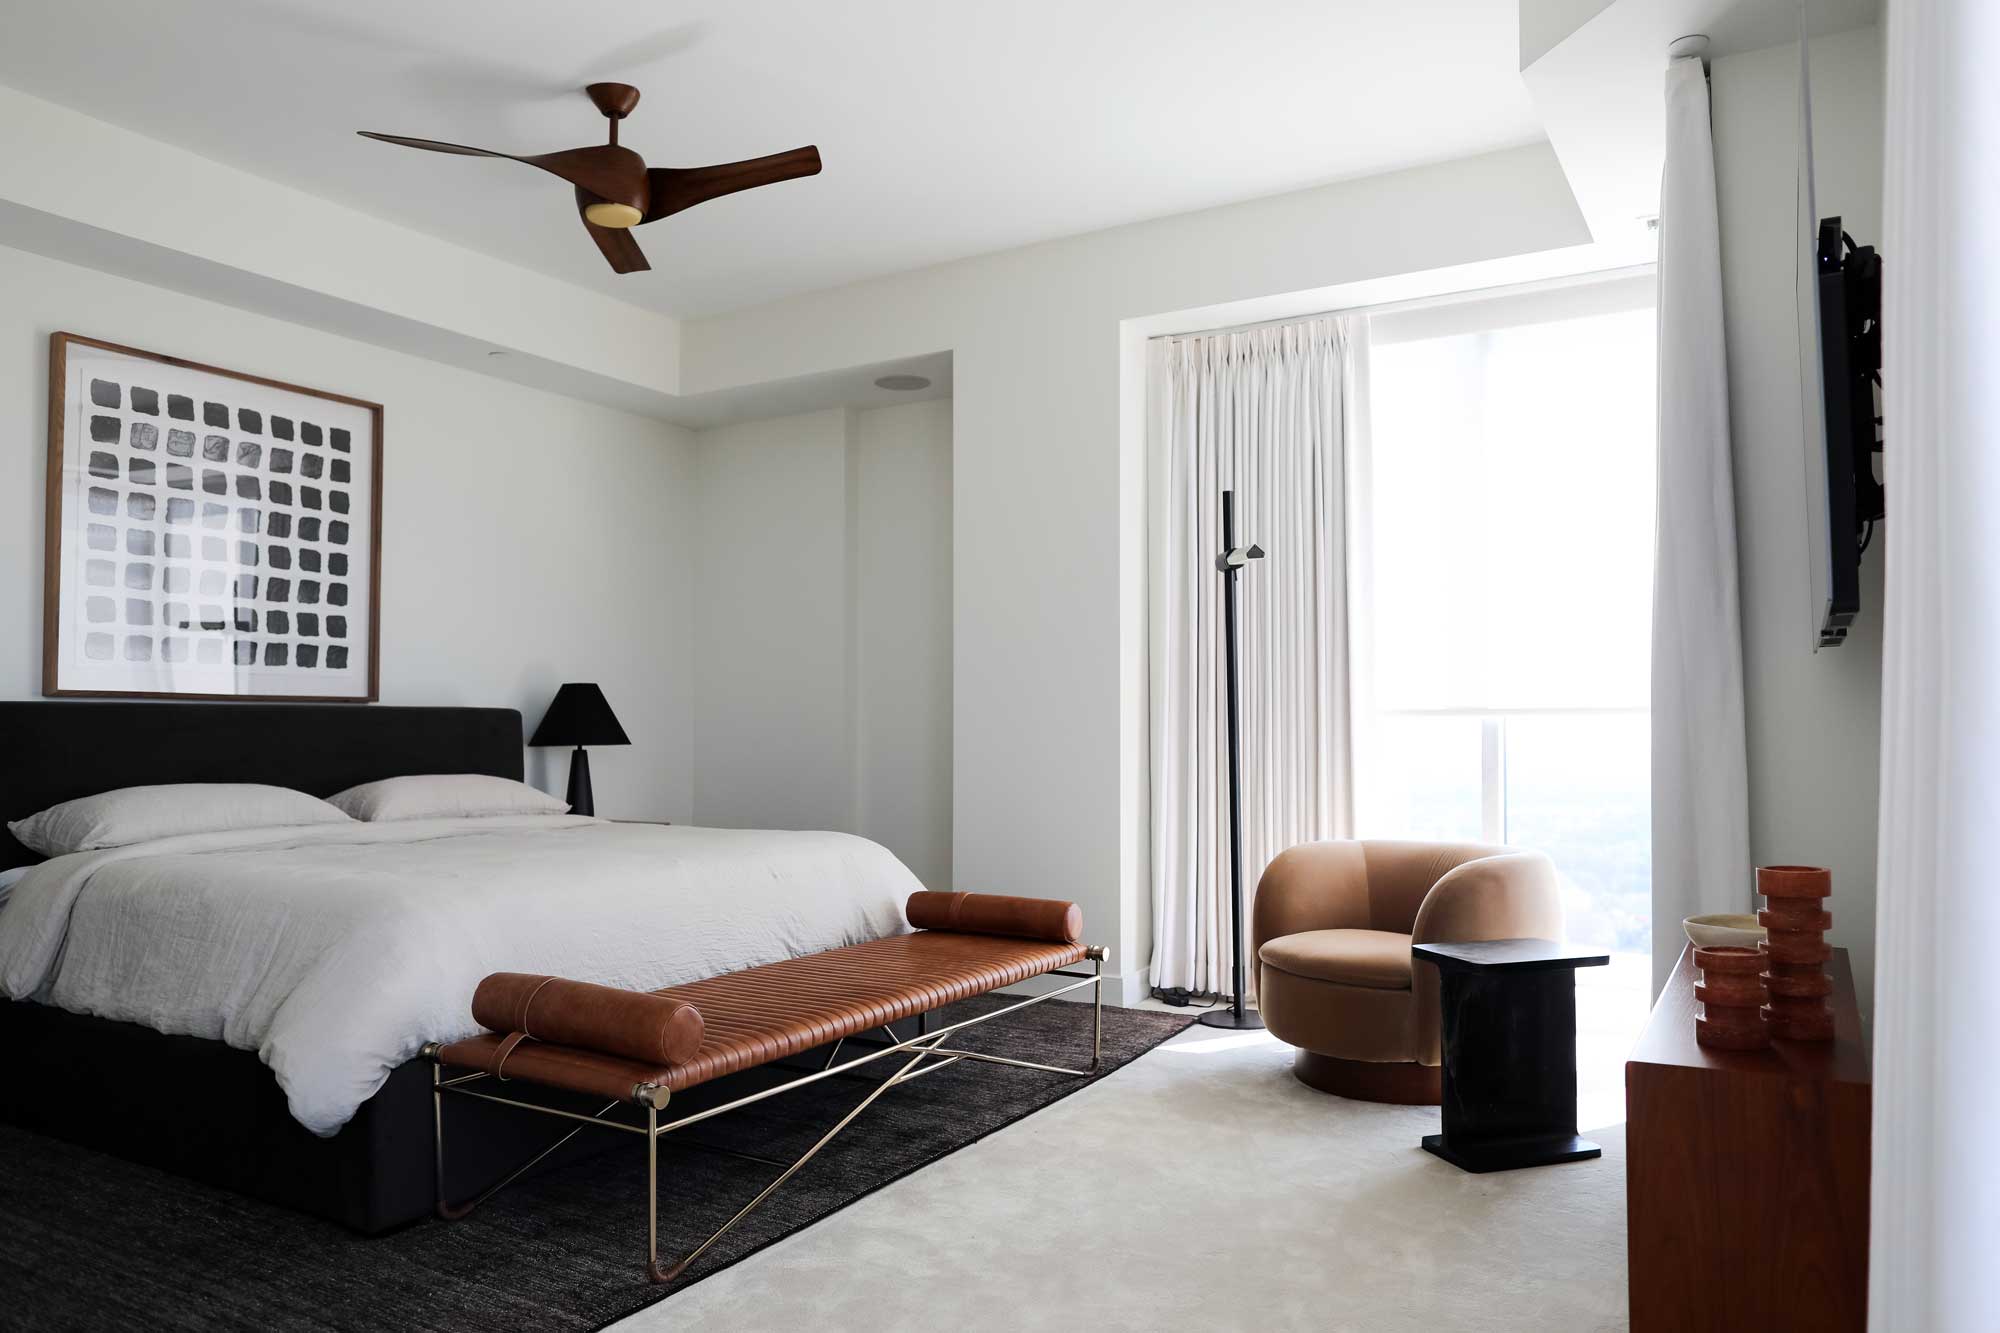 sleek primary bedroom design by interior designer Patchi Cancado